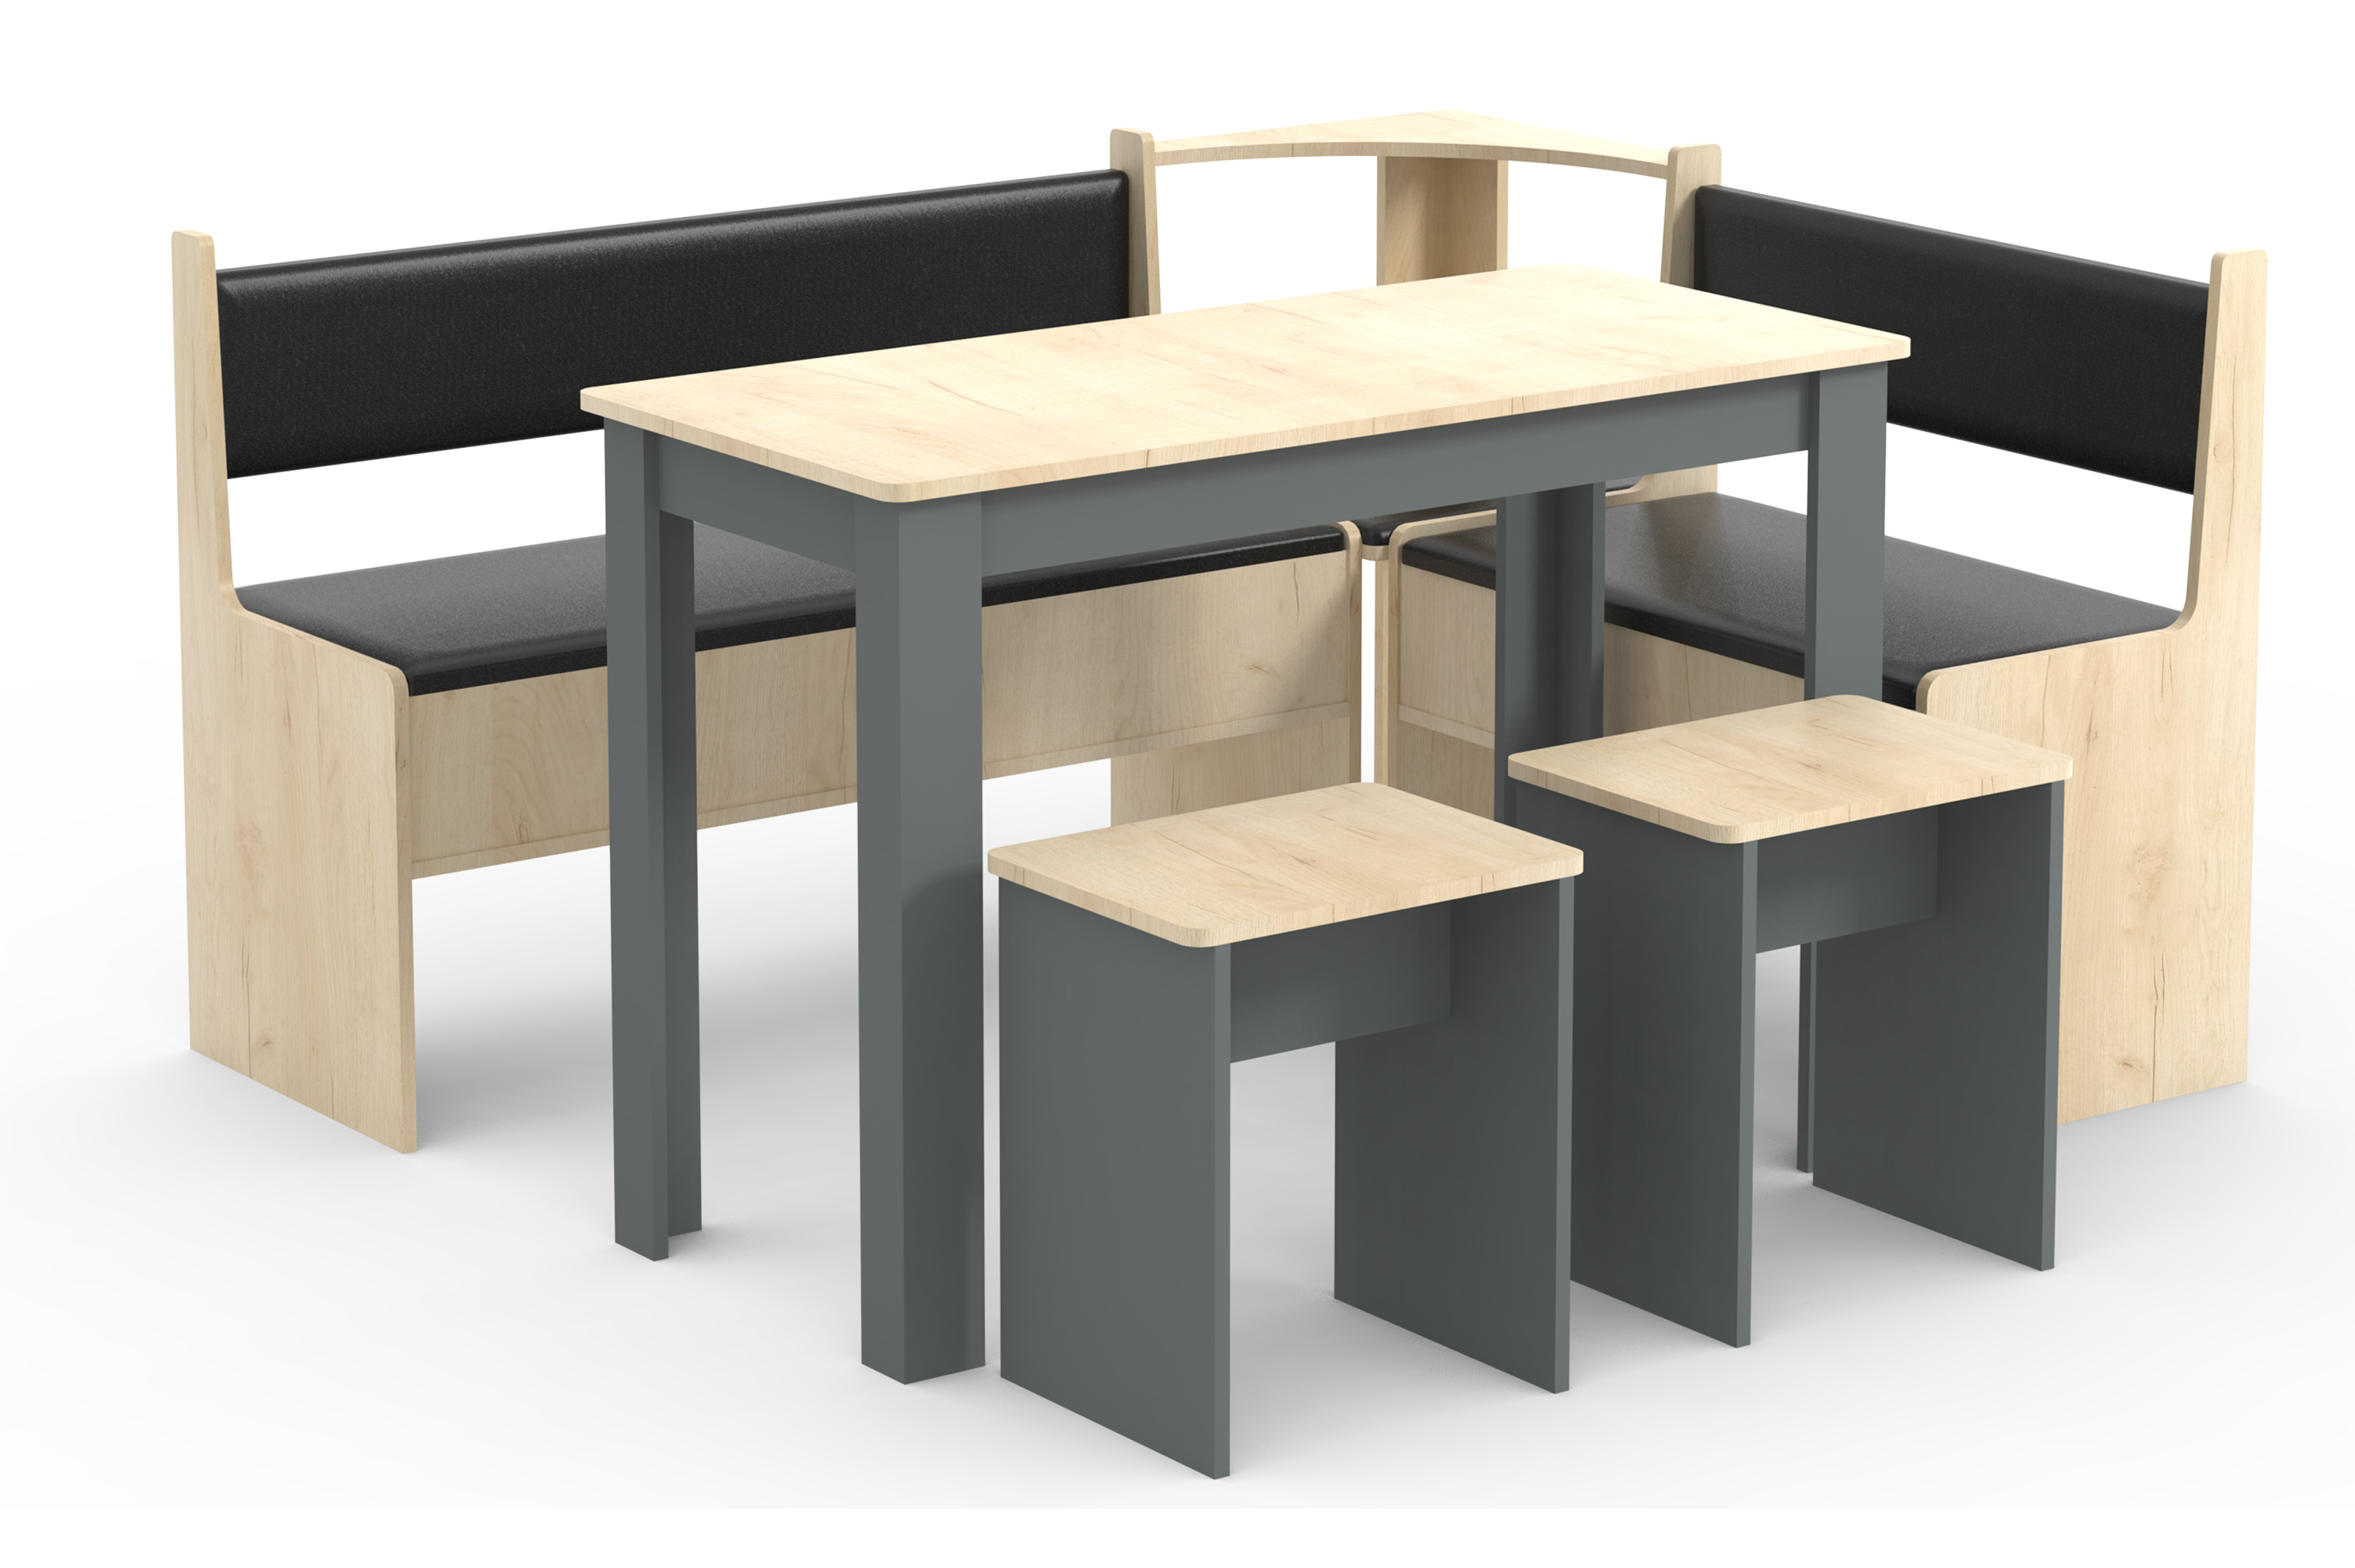 VCM NORDIC Esal Maxi hjørnebænksæt, m. 1 bord, 2 bænke, 2 taburetter - natur og antracitgrå træ